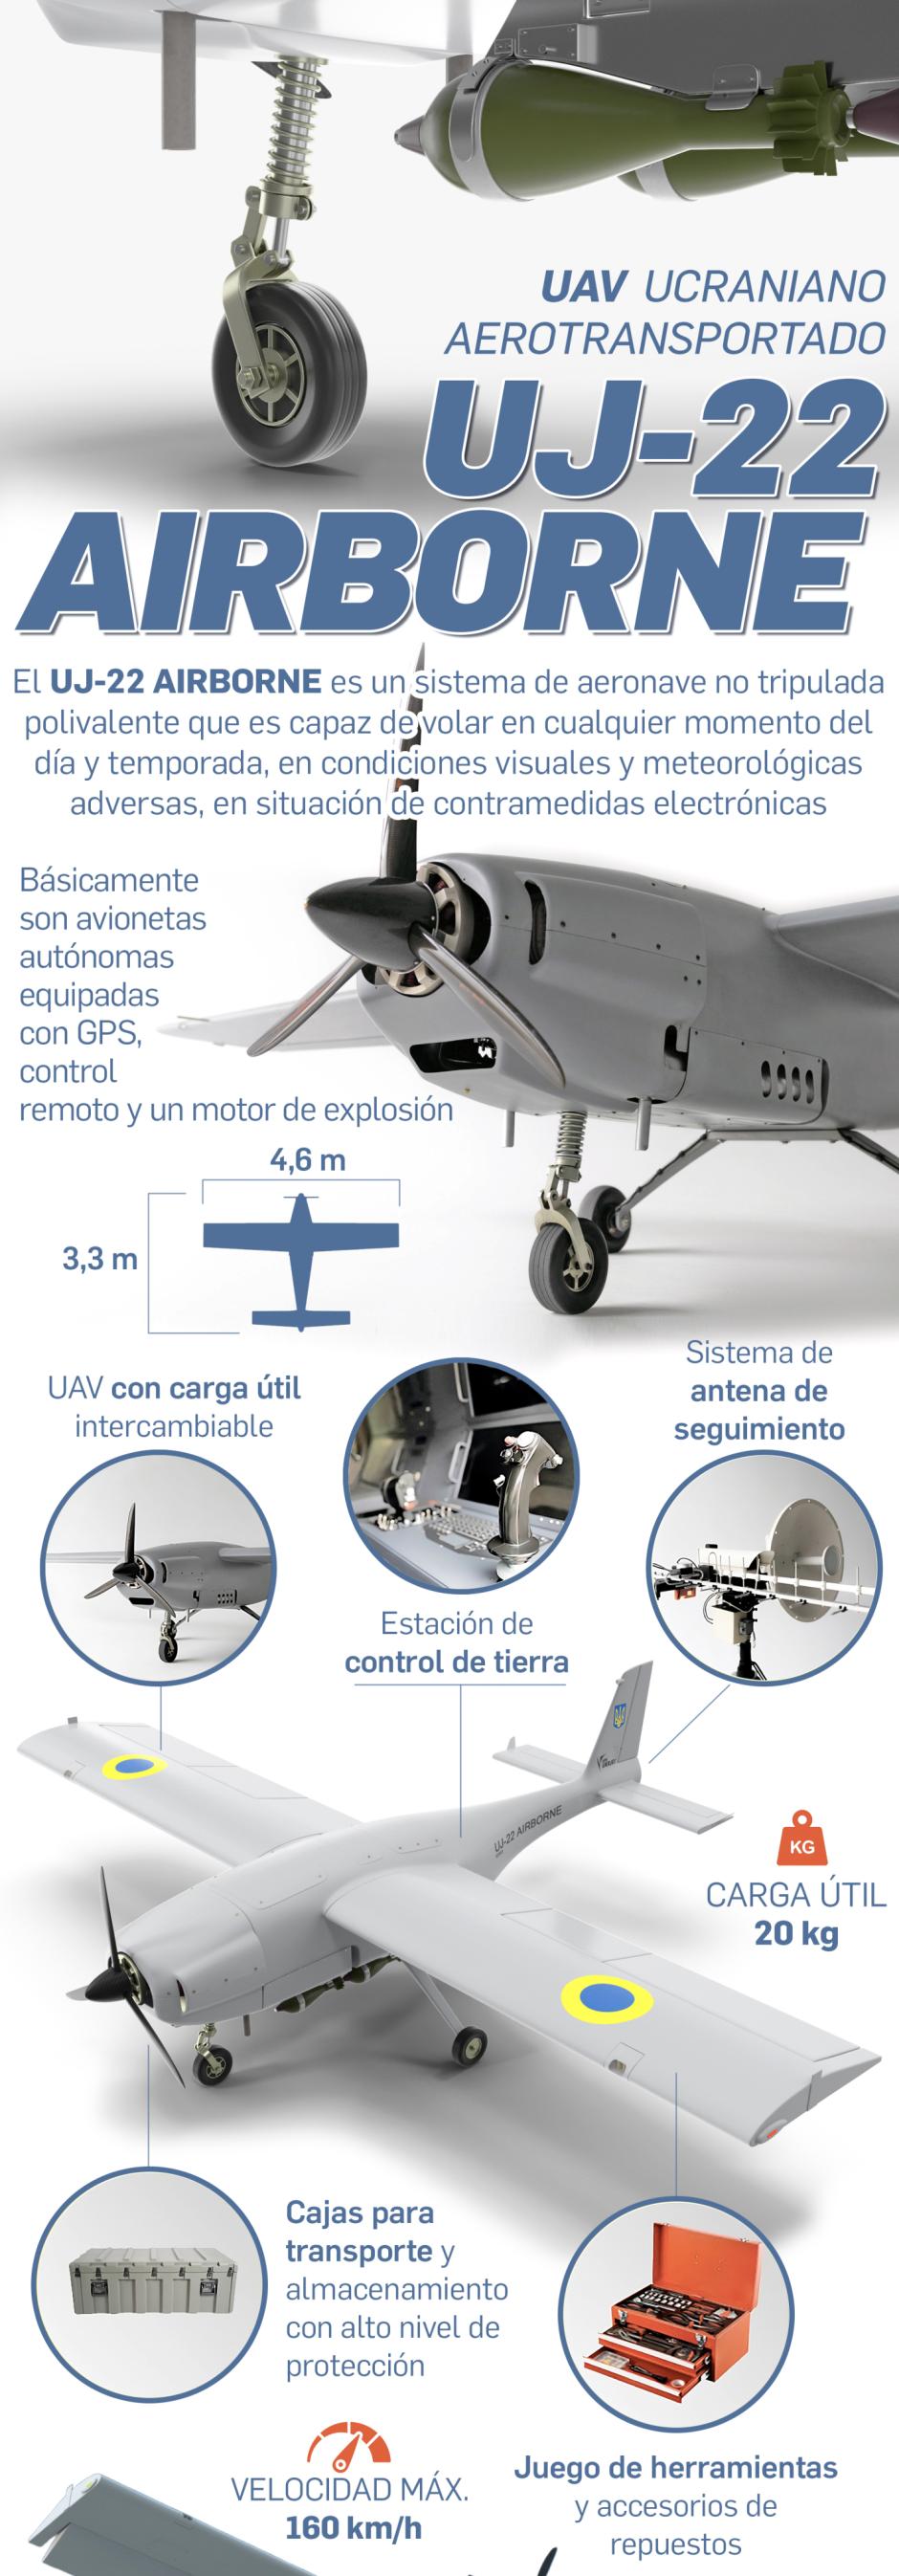 El dron suicida UJ-22 es de fabricación ucraniana y ha incursionado cerca de Moscú